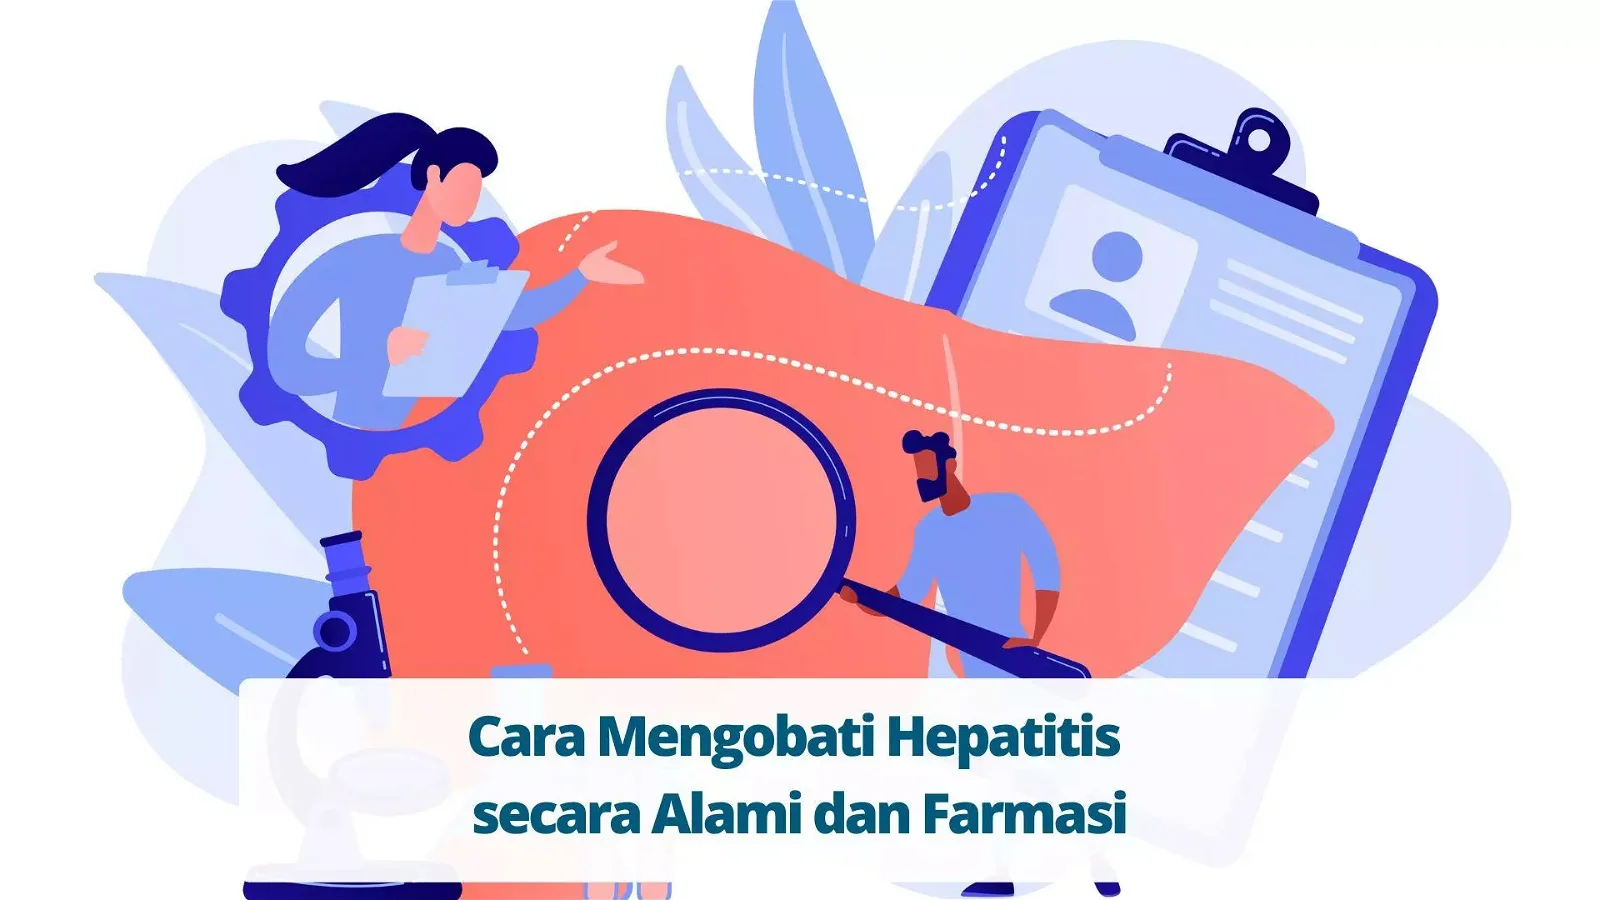 Cara Mengobati Hepatitis secara Alami dan Farmasi